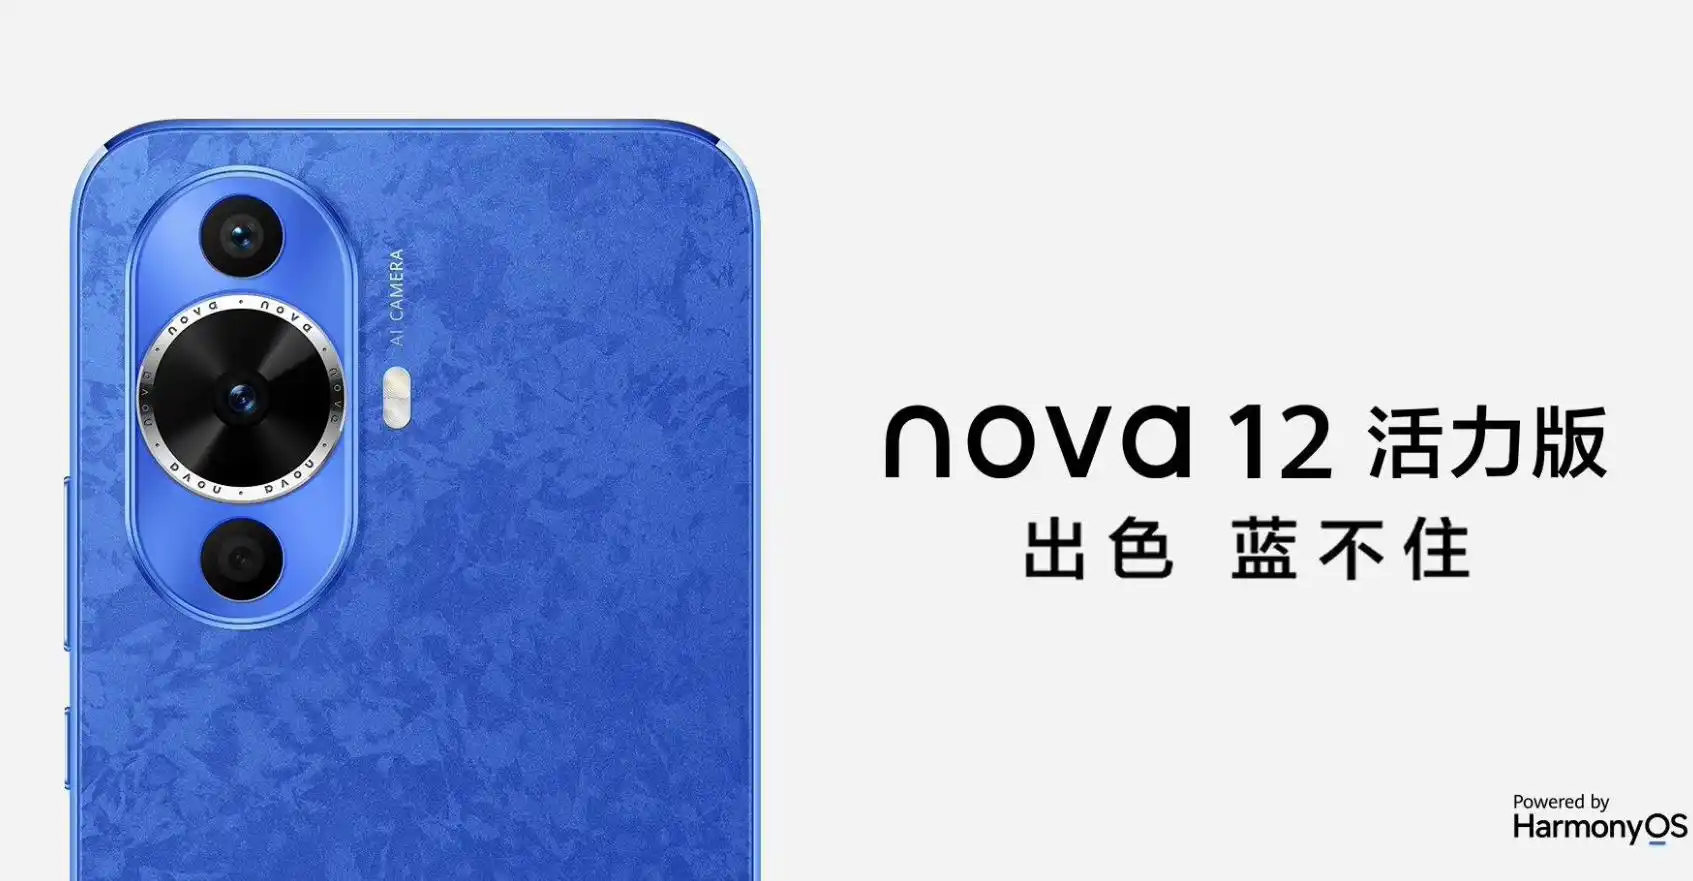 华为推出HUAWEI nova 12活力版手机 打造年轻人的时尚潮品